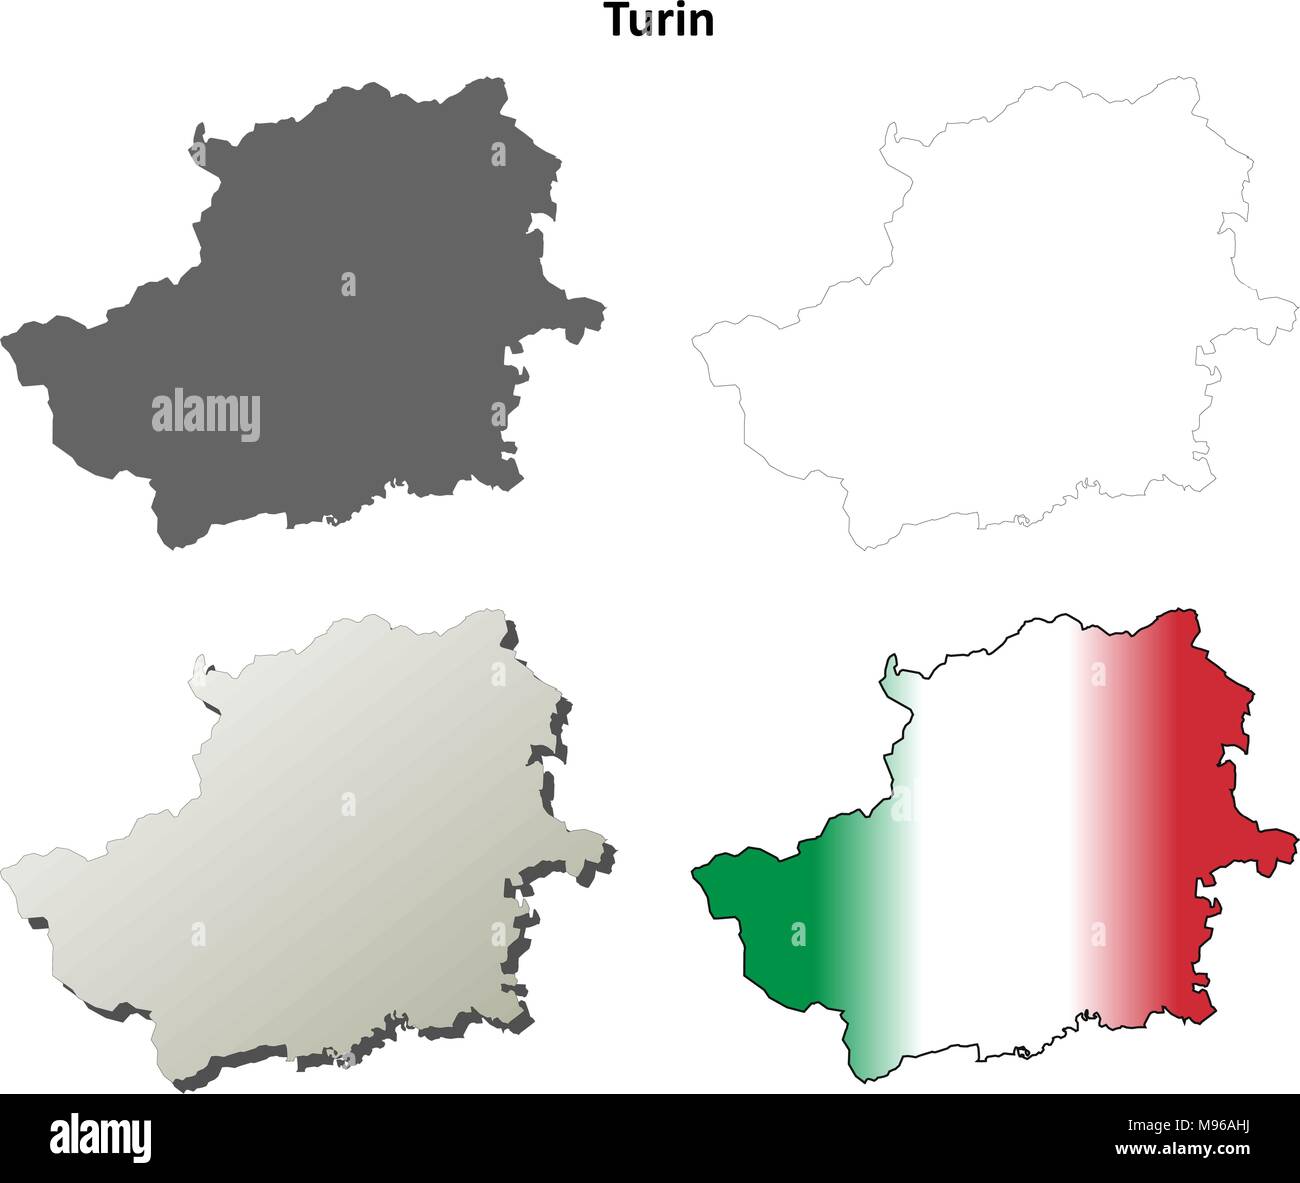 Turin leer detaillierte Gliederung Karte gesetzt Stock Vektor